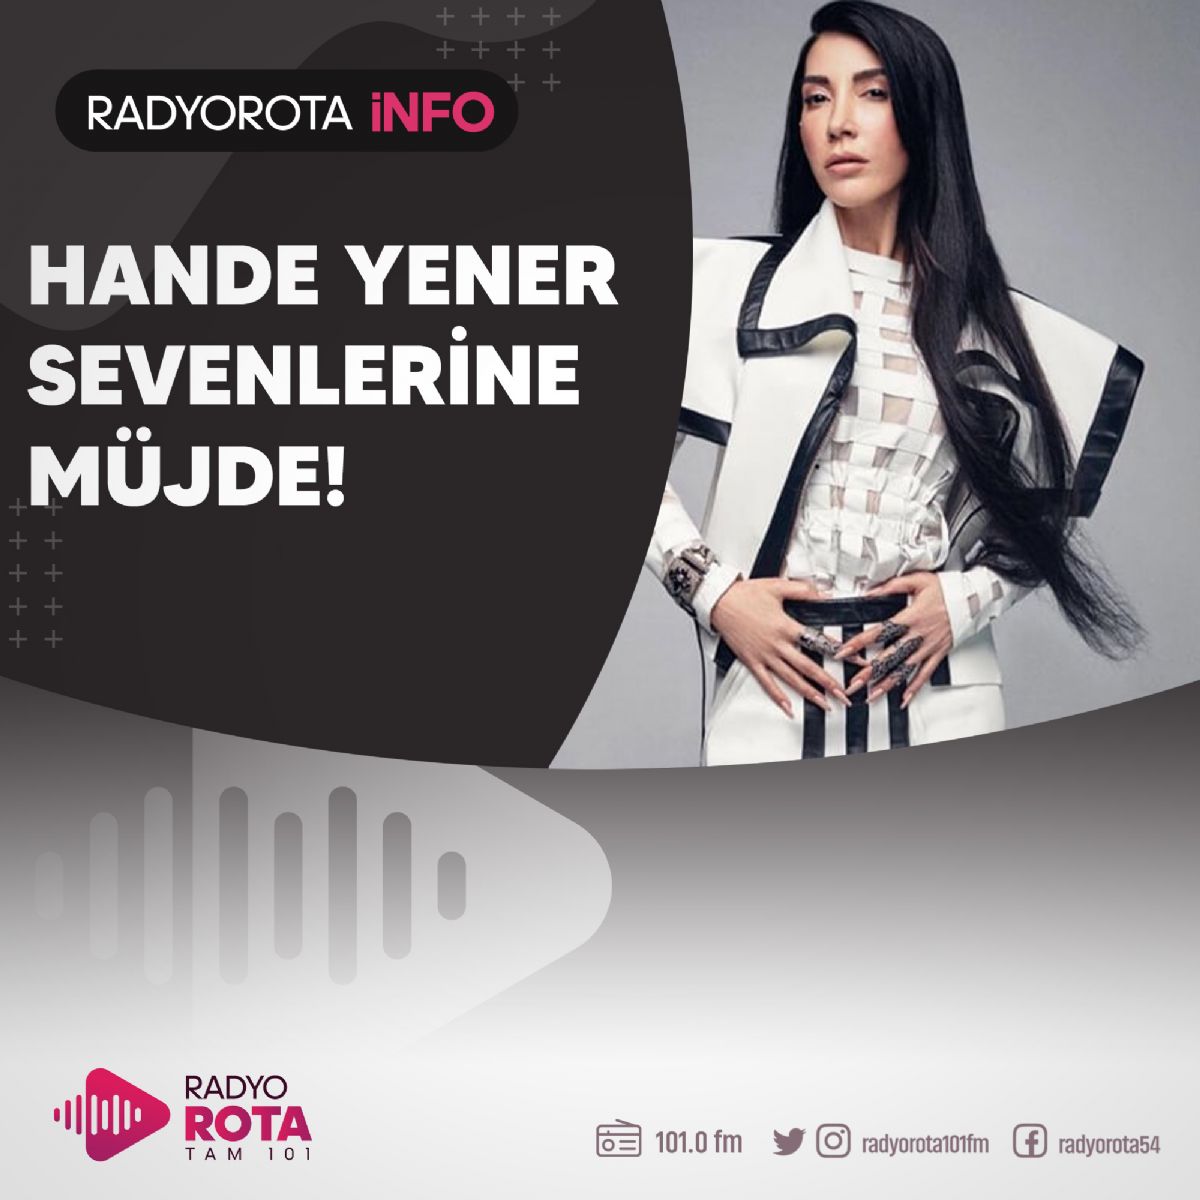 Hande Yener Sevenlerine Mjde!